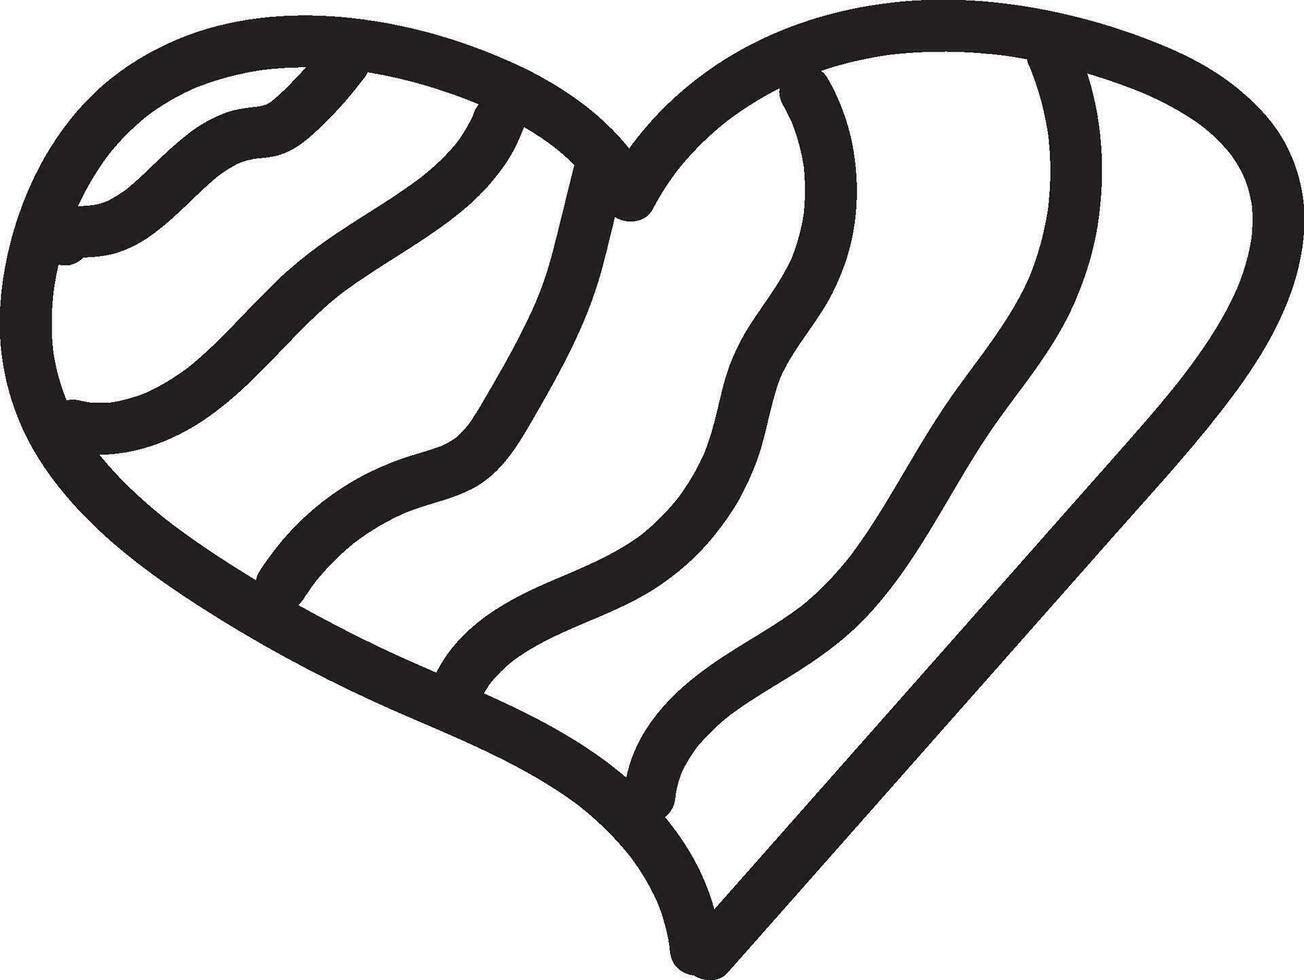 Herz Gekritzel, Liebe Symbol, Hintergrund, Illustration, Valentinstag, Valentinstag, Zeichnung, kritzeln, Gliederung vektor